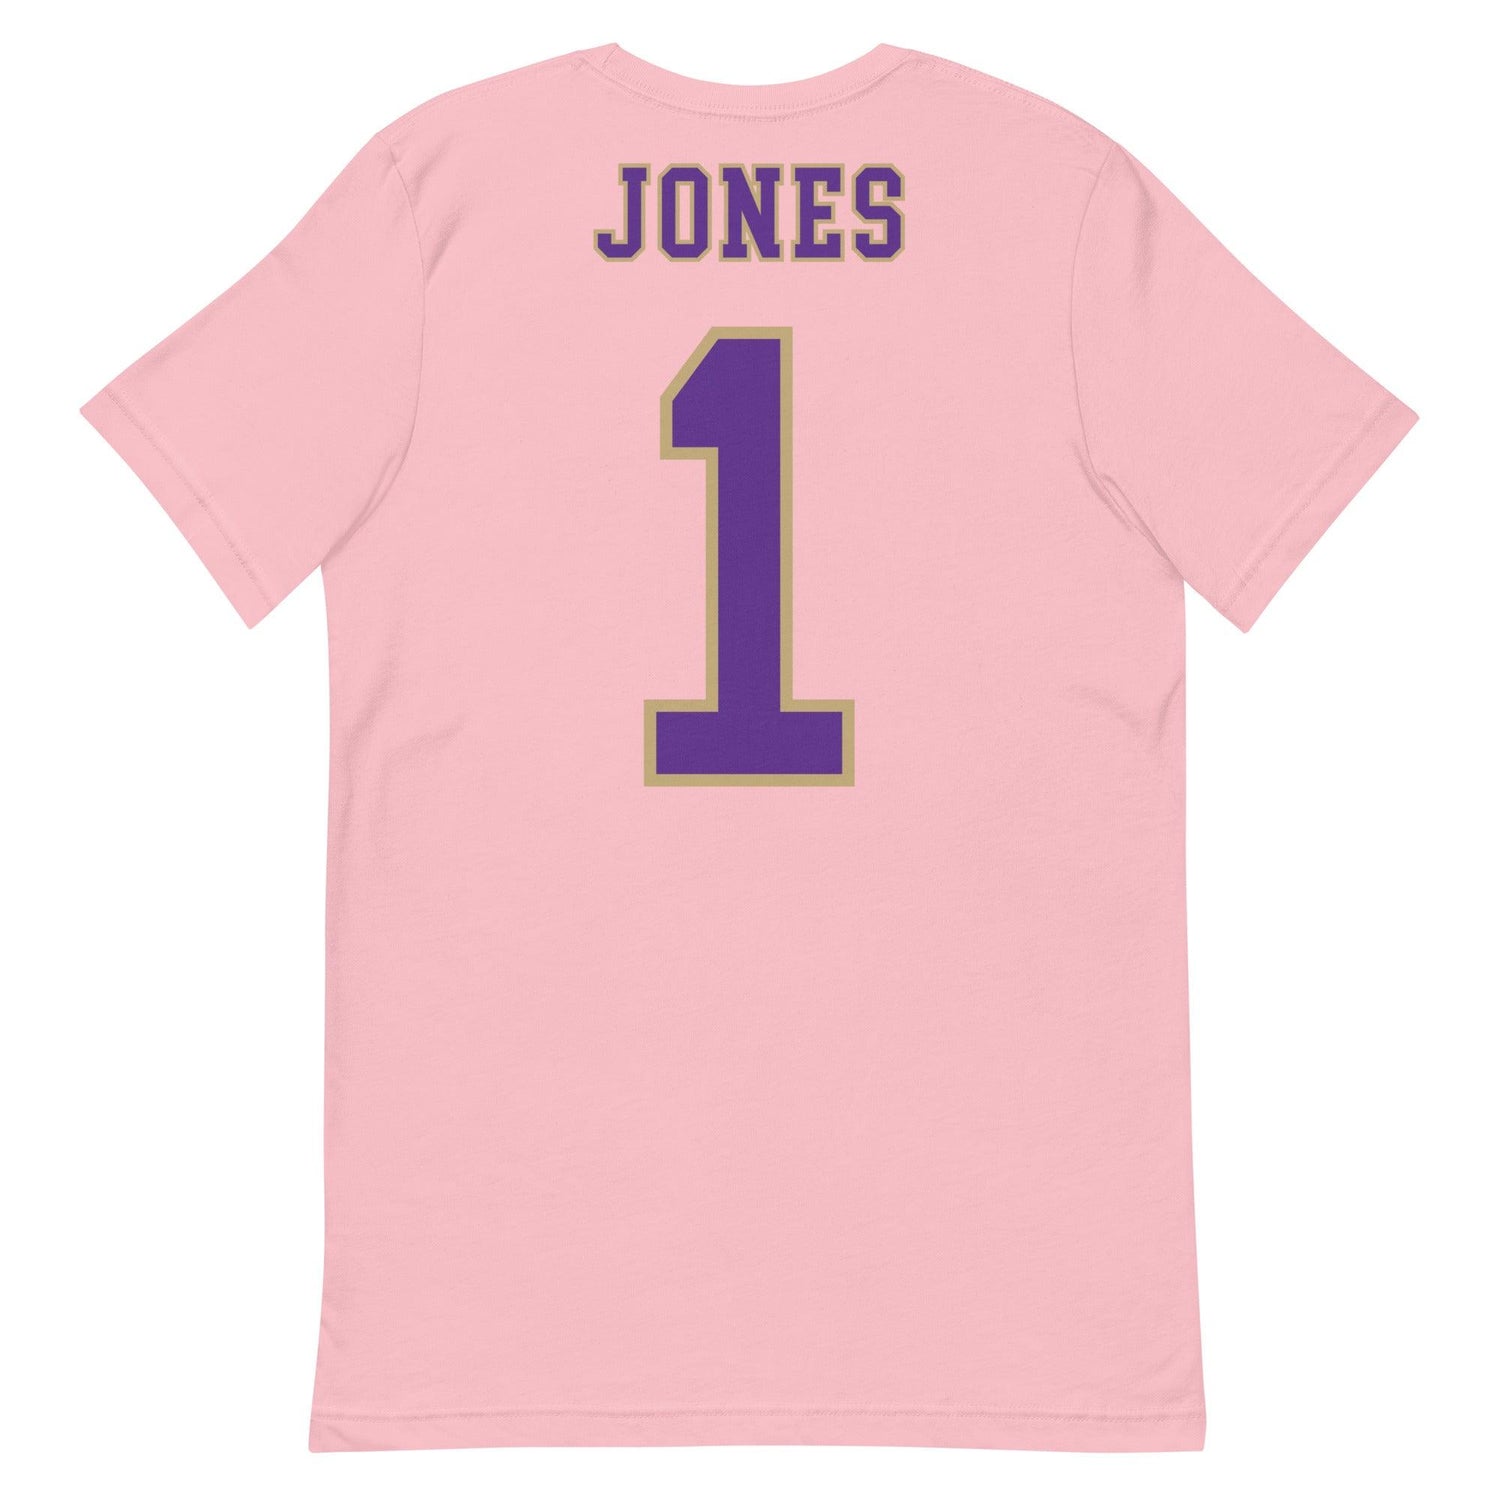 Russell Jones "Jersey" t-shirt - Fan Arch